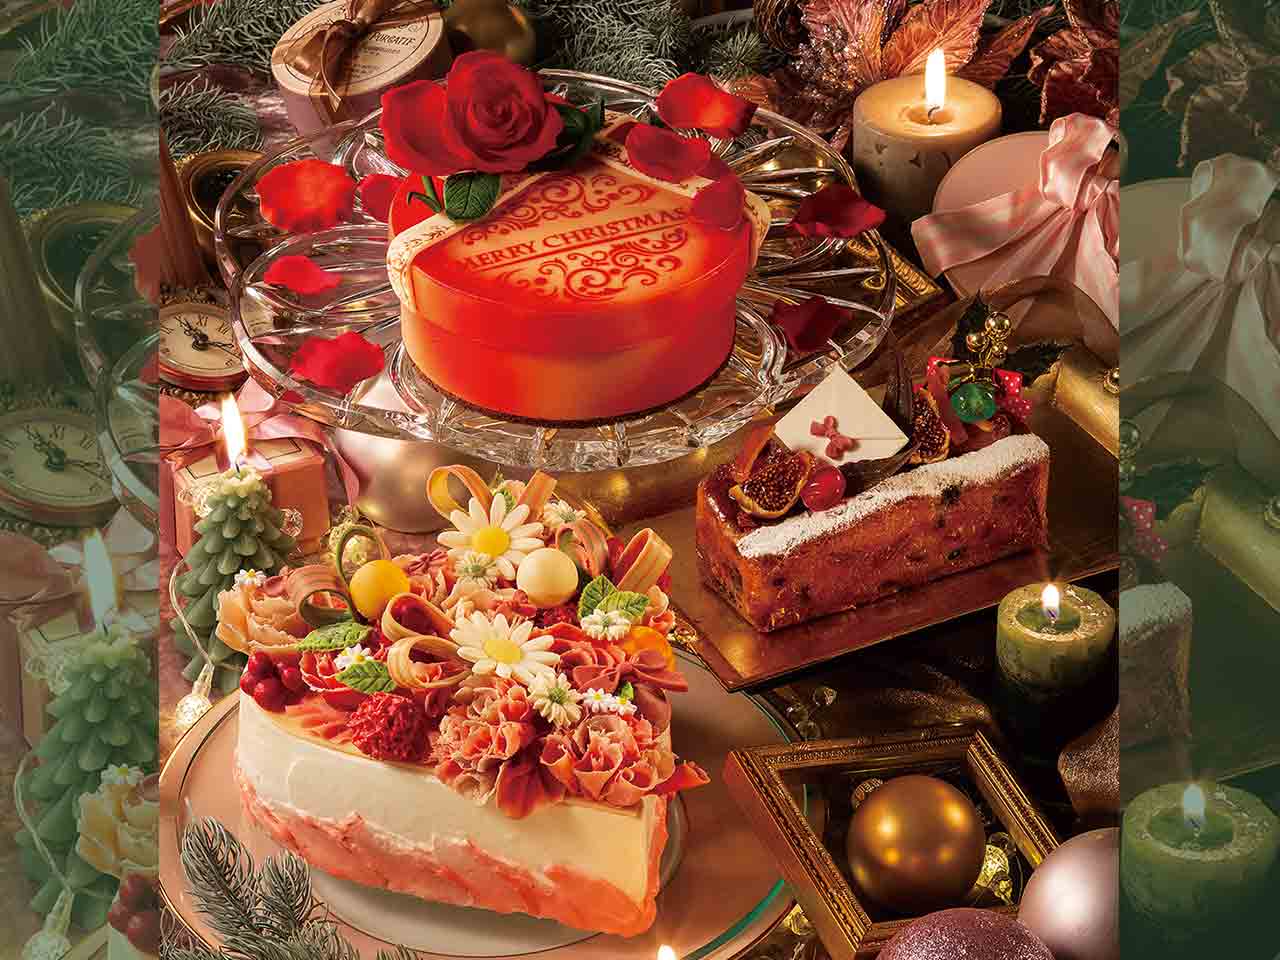 多摩市 32年間の感謝の気持ちを込めて 京王プラザホテル多摩 特別なクリスマスケーキの予約が始まります 号外net 多摩市 稲城市